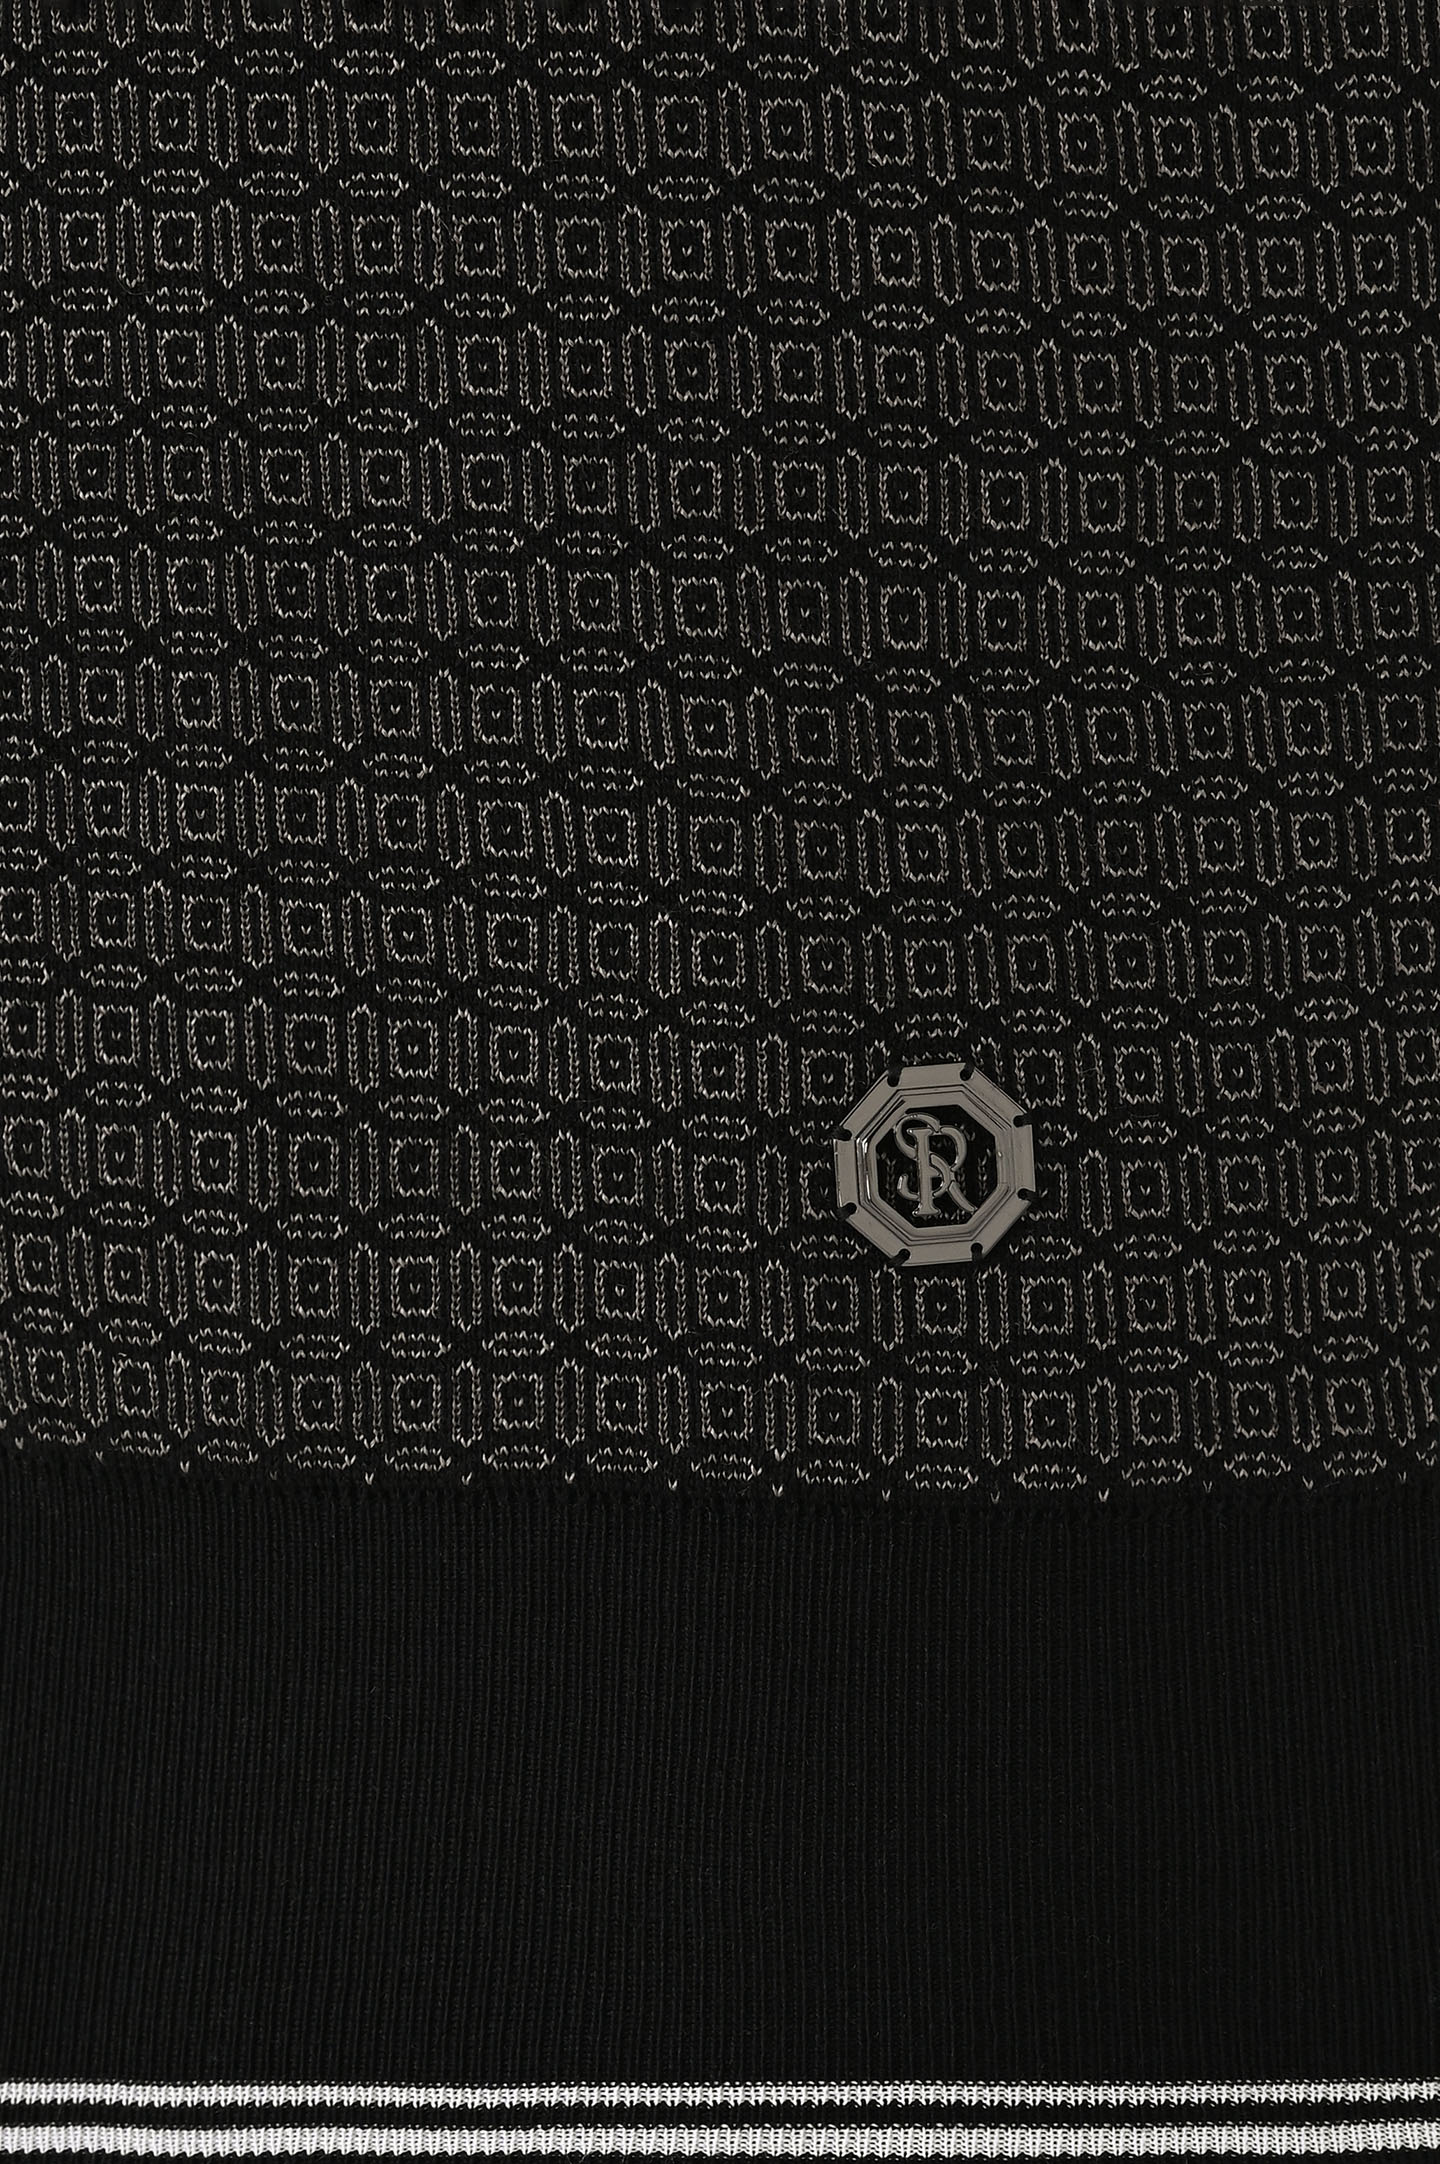 Поло из хлопка и шелка на молнии STEFANO RICCI K818070P31 F24175, цвет: Черный, Мужской